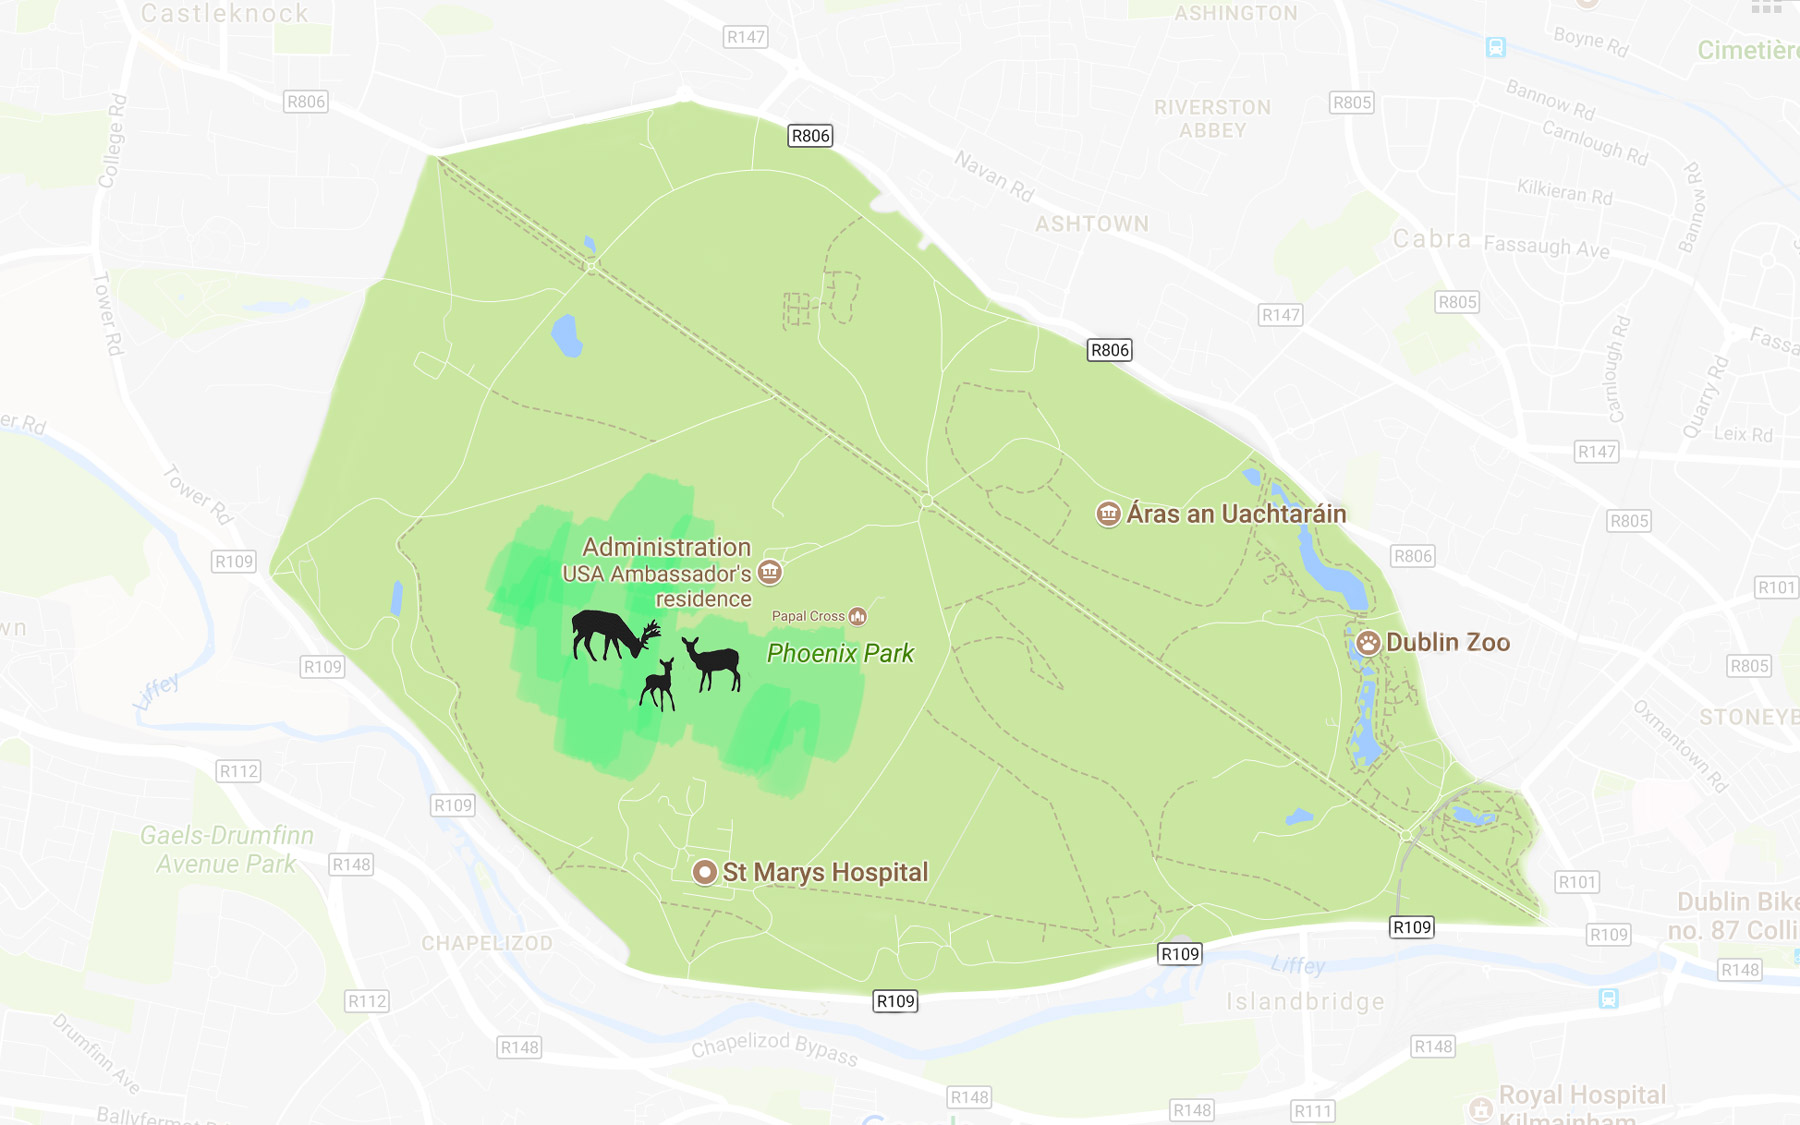 Carte: Meilleur endroit pour voir les Biches à Phoenix Park, Dublin